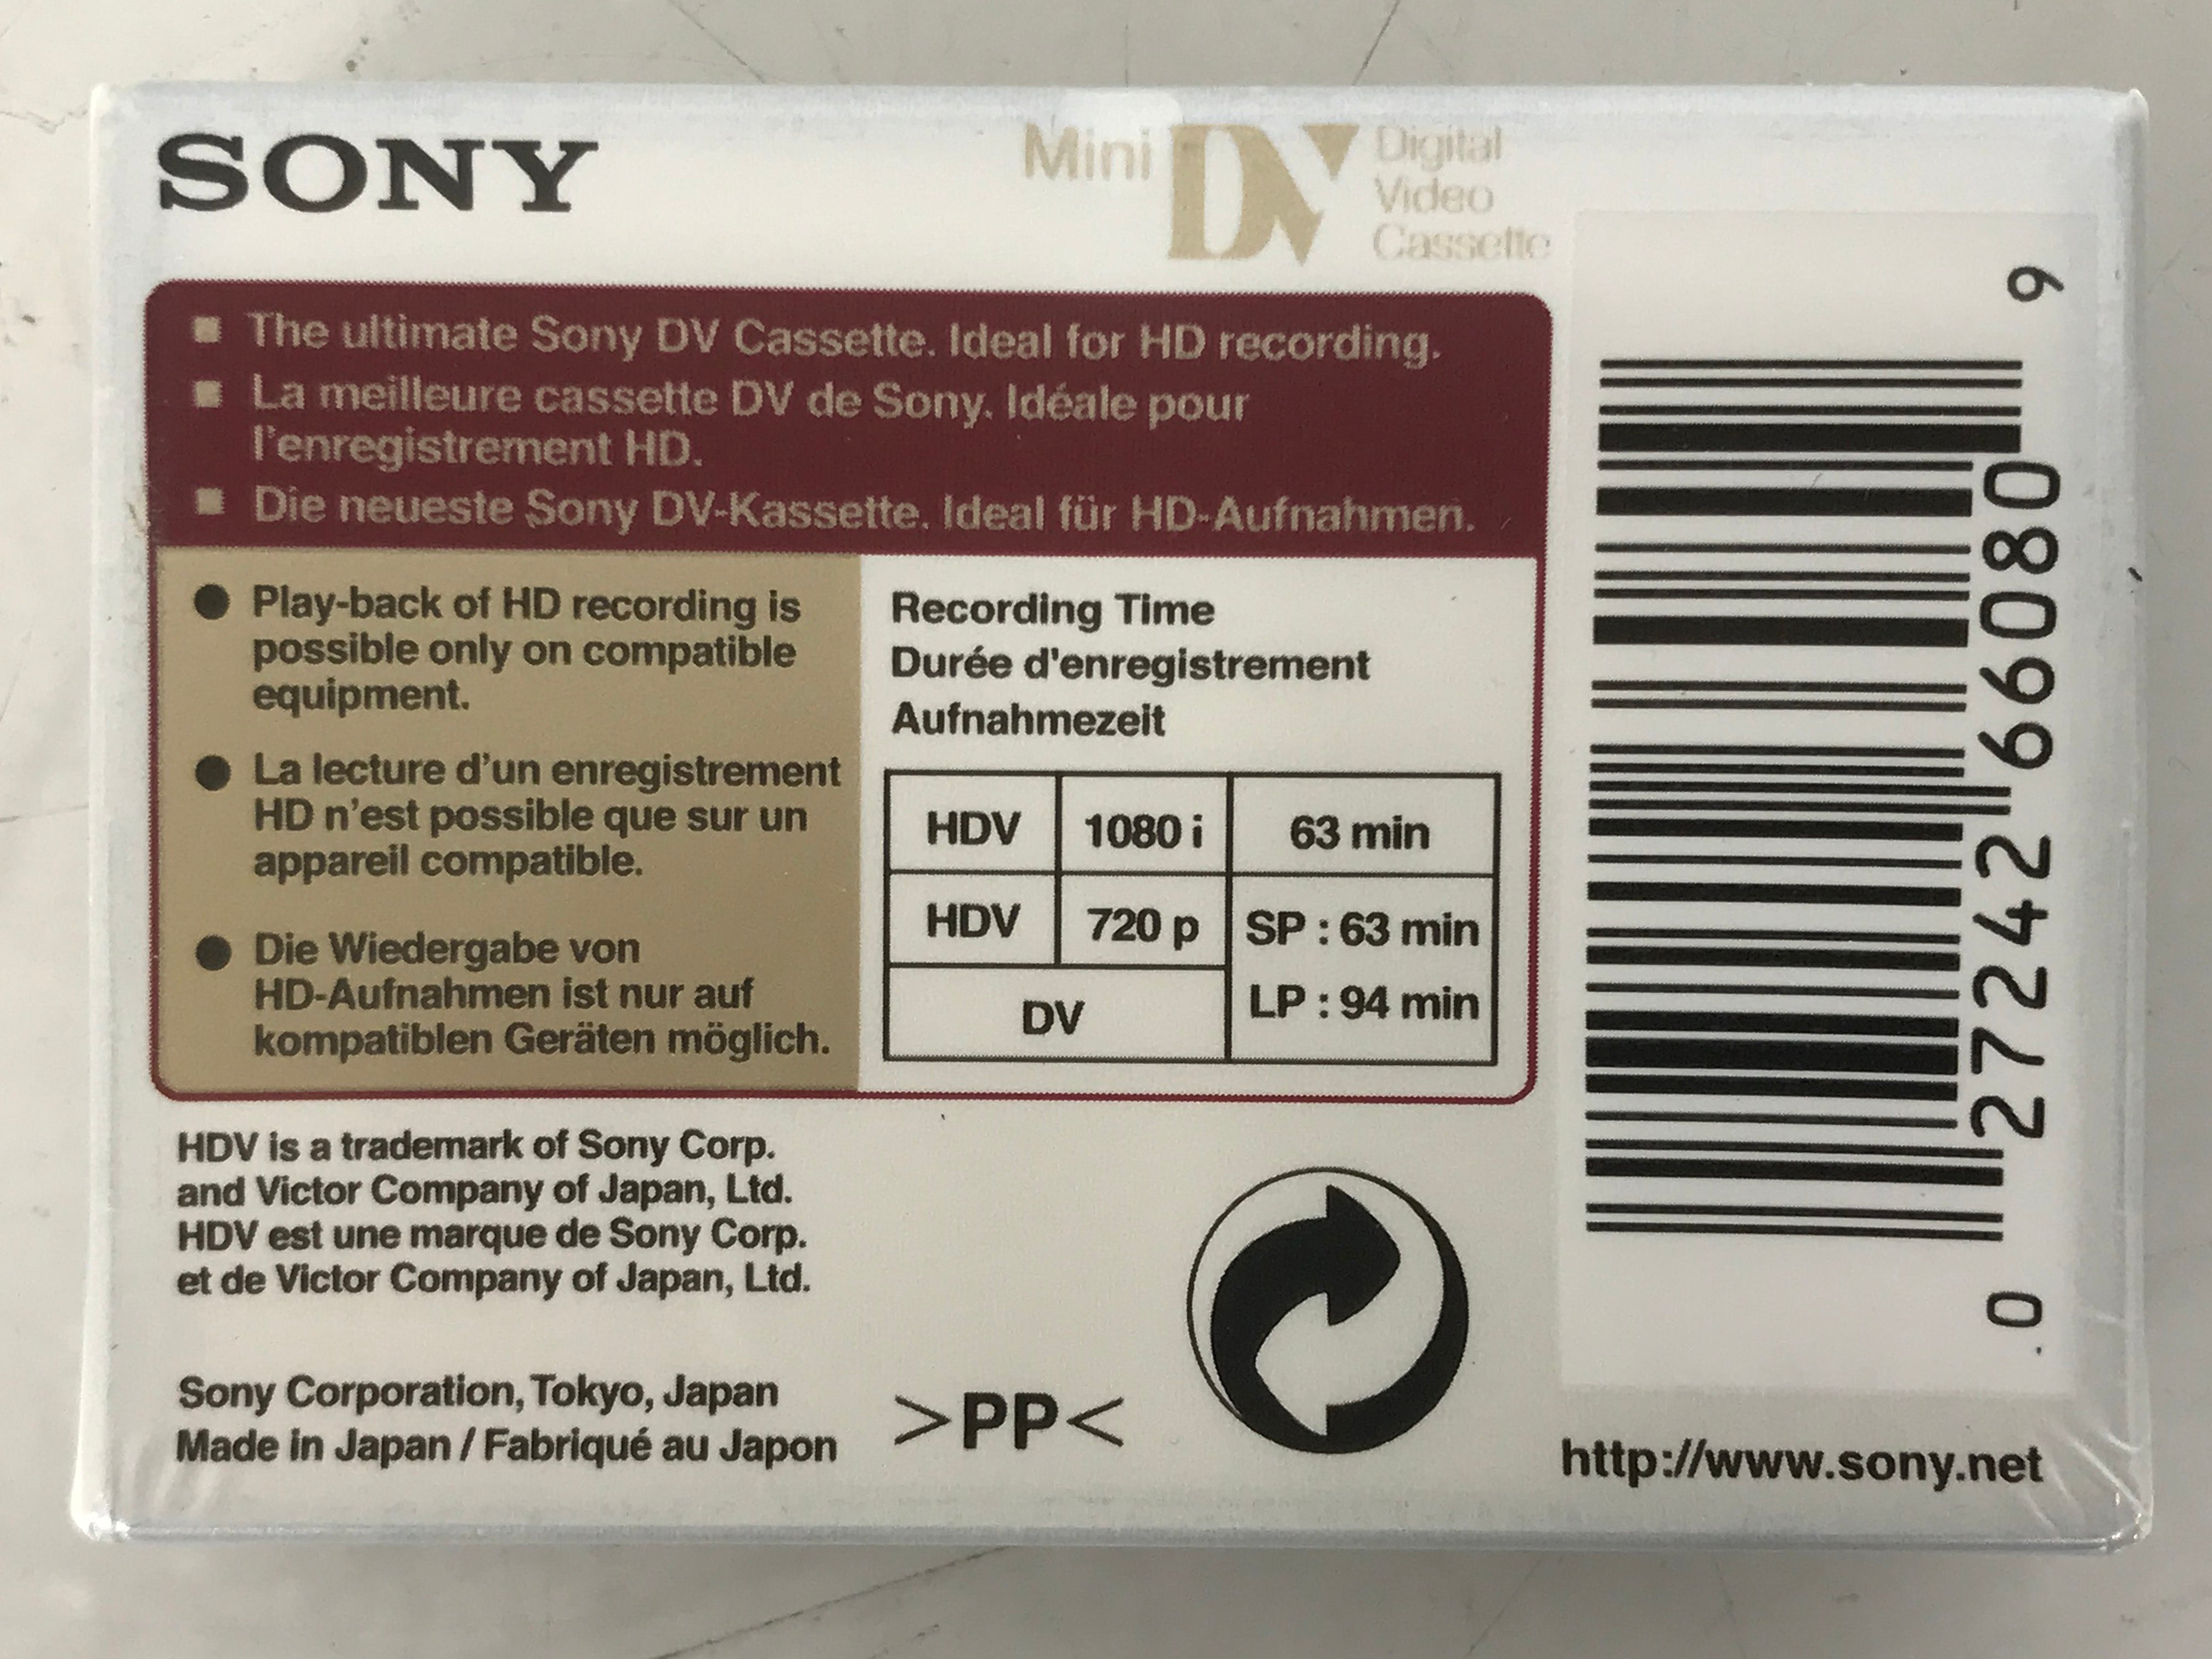 Sony DVM63HD 63min miniDV Video Cassette